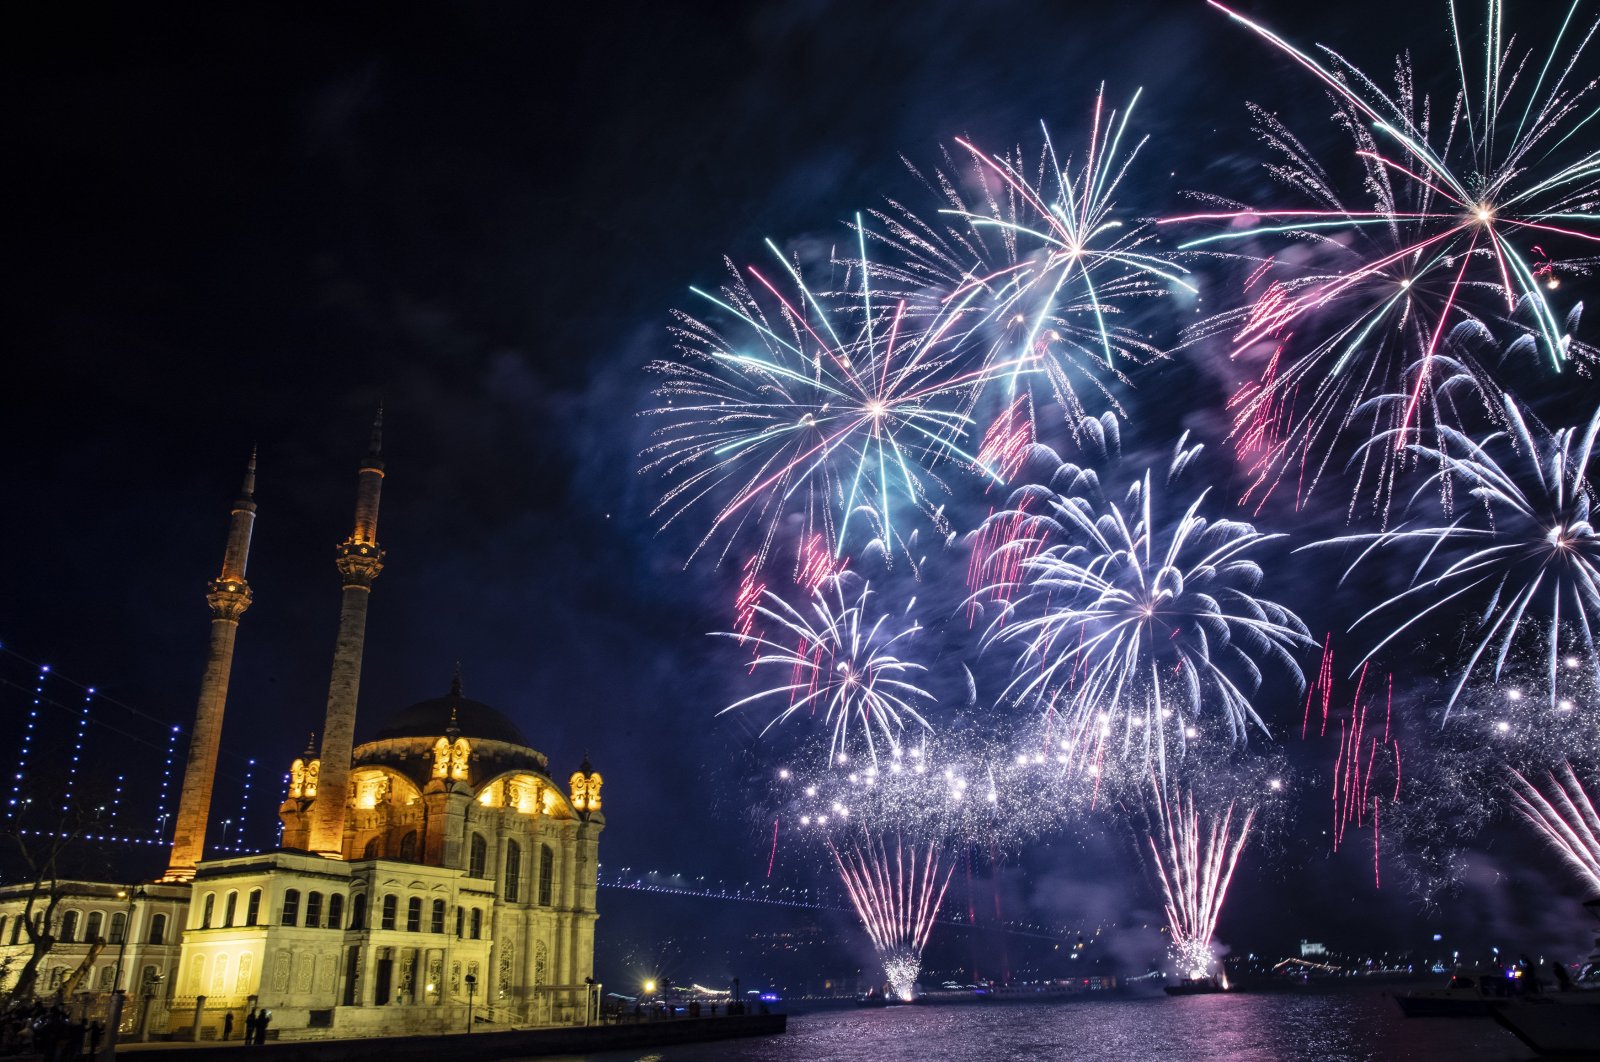 Turki berencana melarang kembang api untuk mengekang kebisingan, polusi cahaya